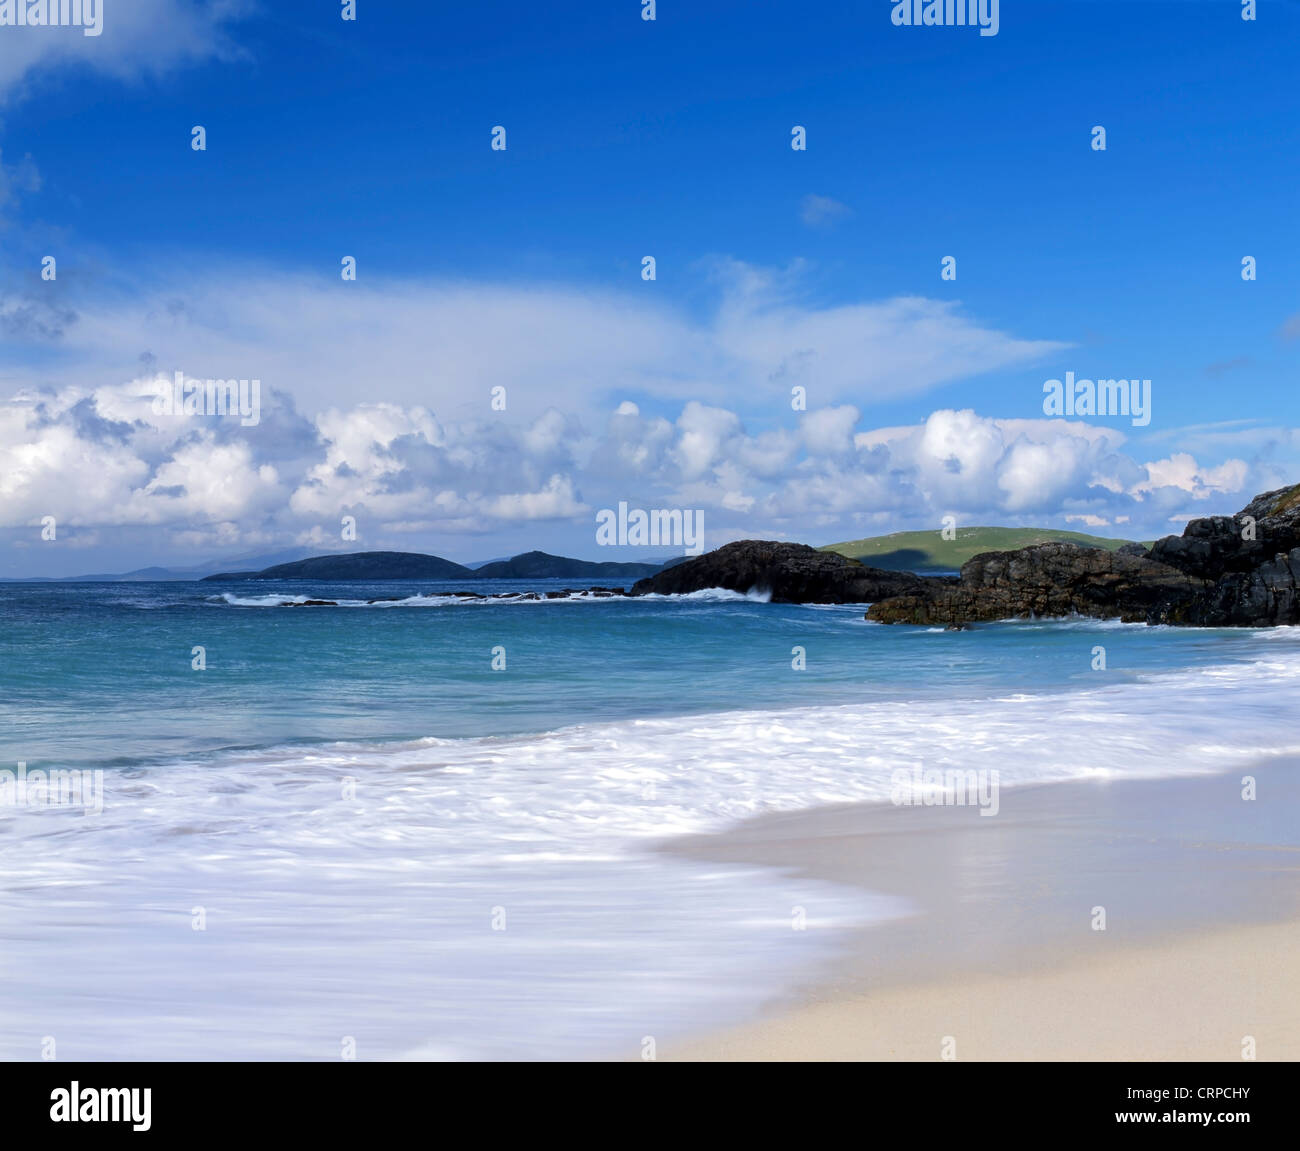 Rotolo di onde sulla spiaggia di sabbia vicino a Borgh sulla piccola isola delle Ebridi di Barra. Foto Stock